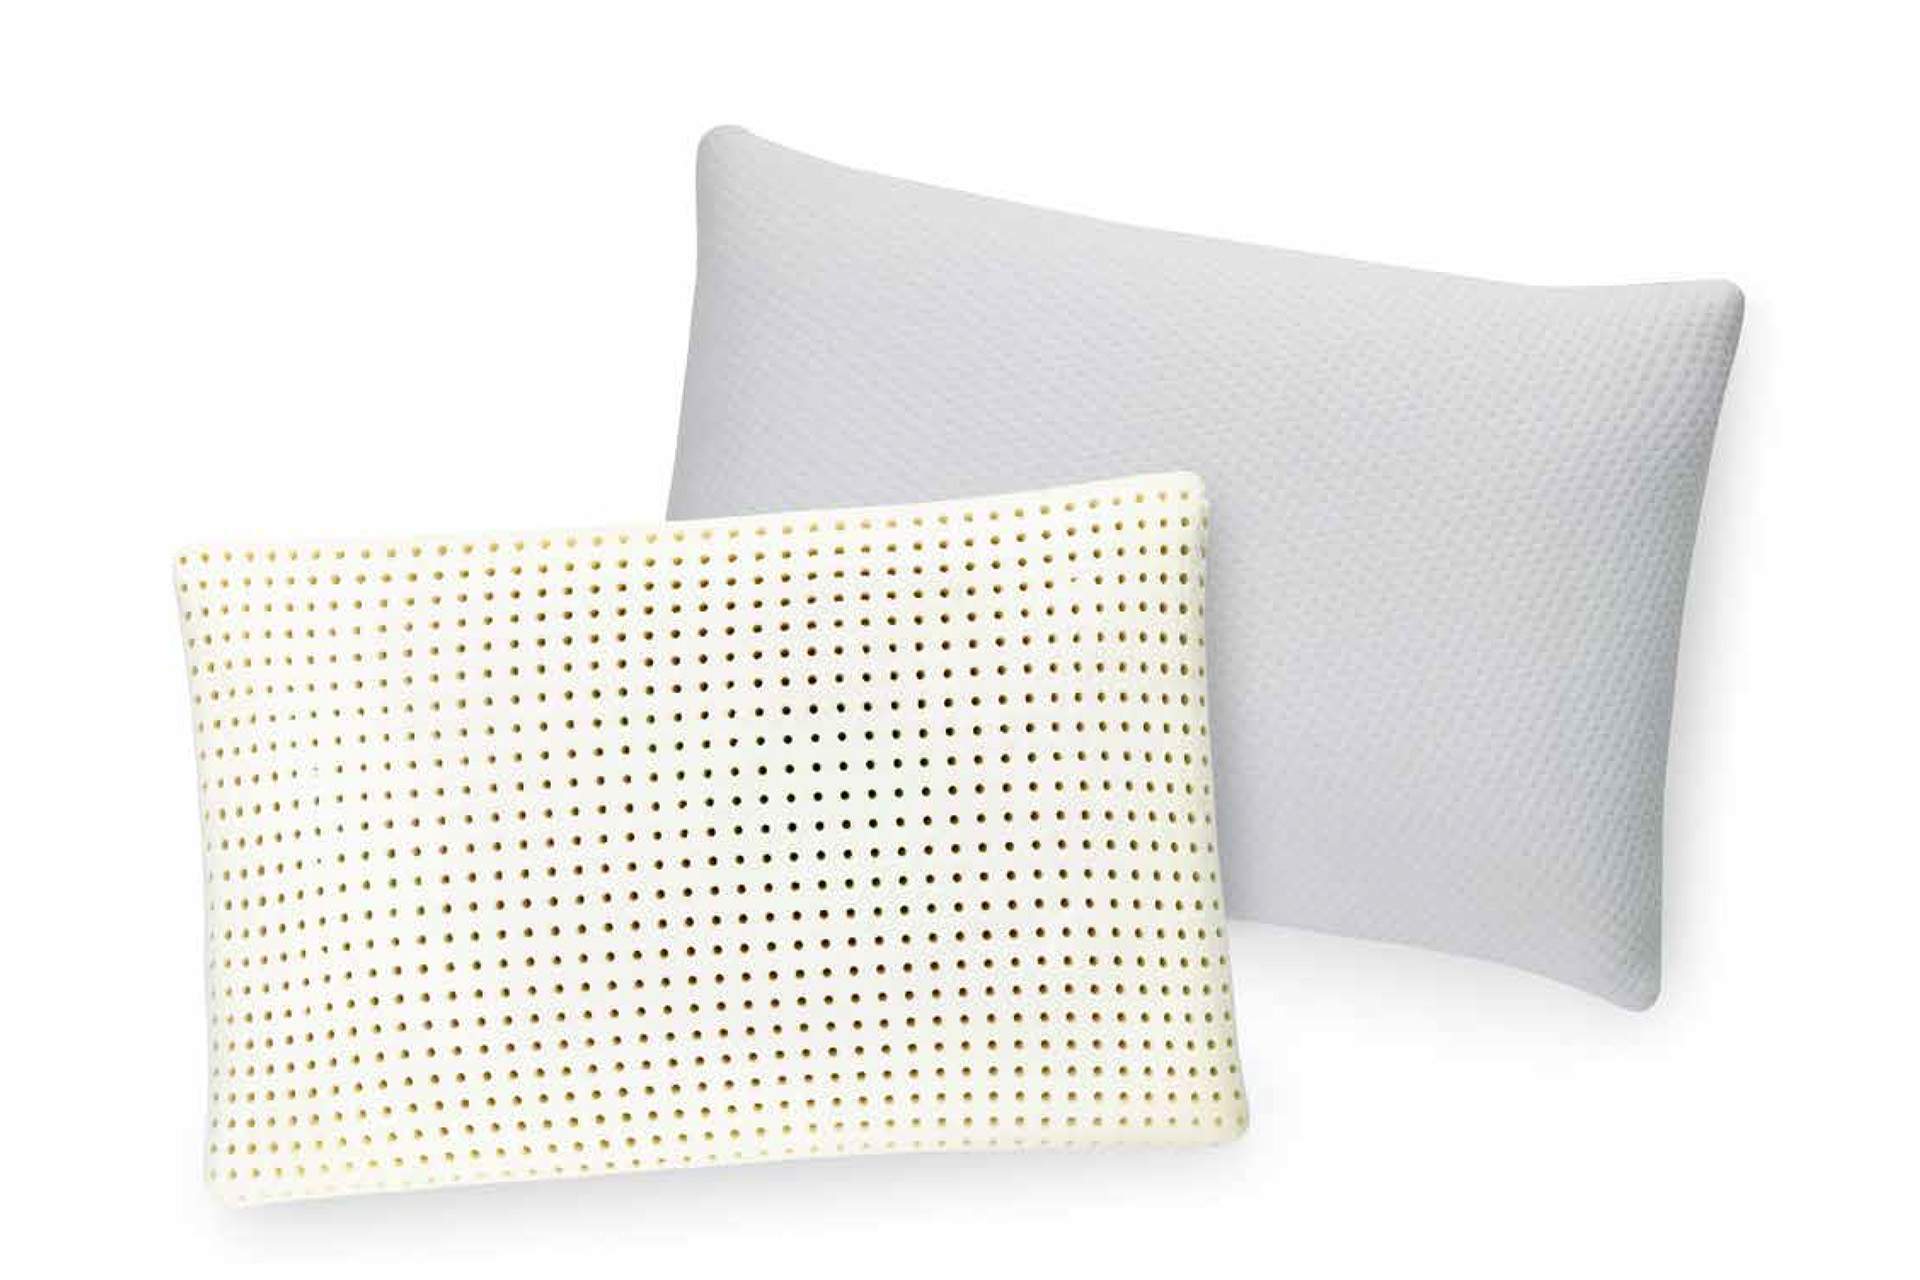 https://mattresskinginc.com/wp-content/uploads/2019/11/Mattress-King-Inc-Brooklyn-Bedding-Accessories-01-Pillows-02-Ventilated-Memory-Foam-Pillow.jpg